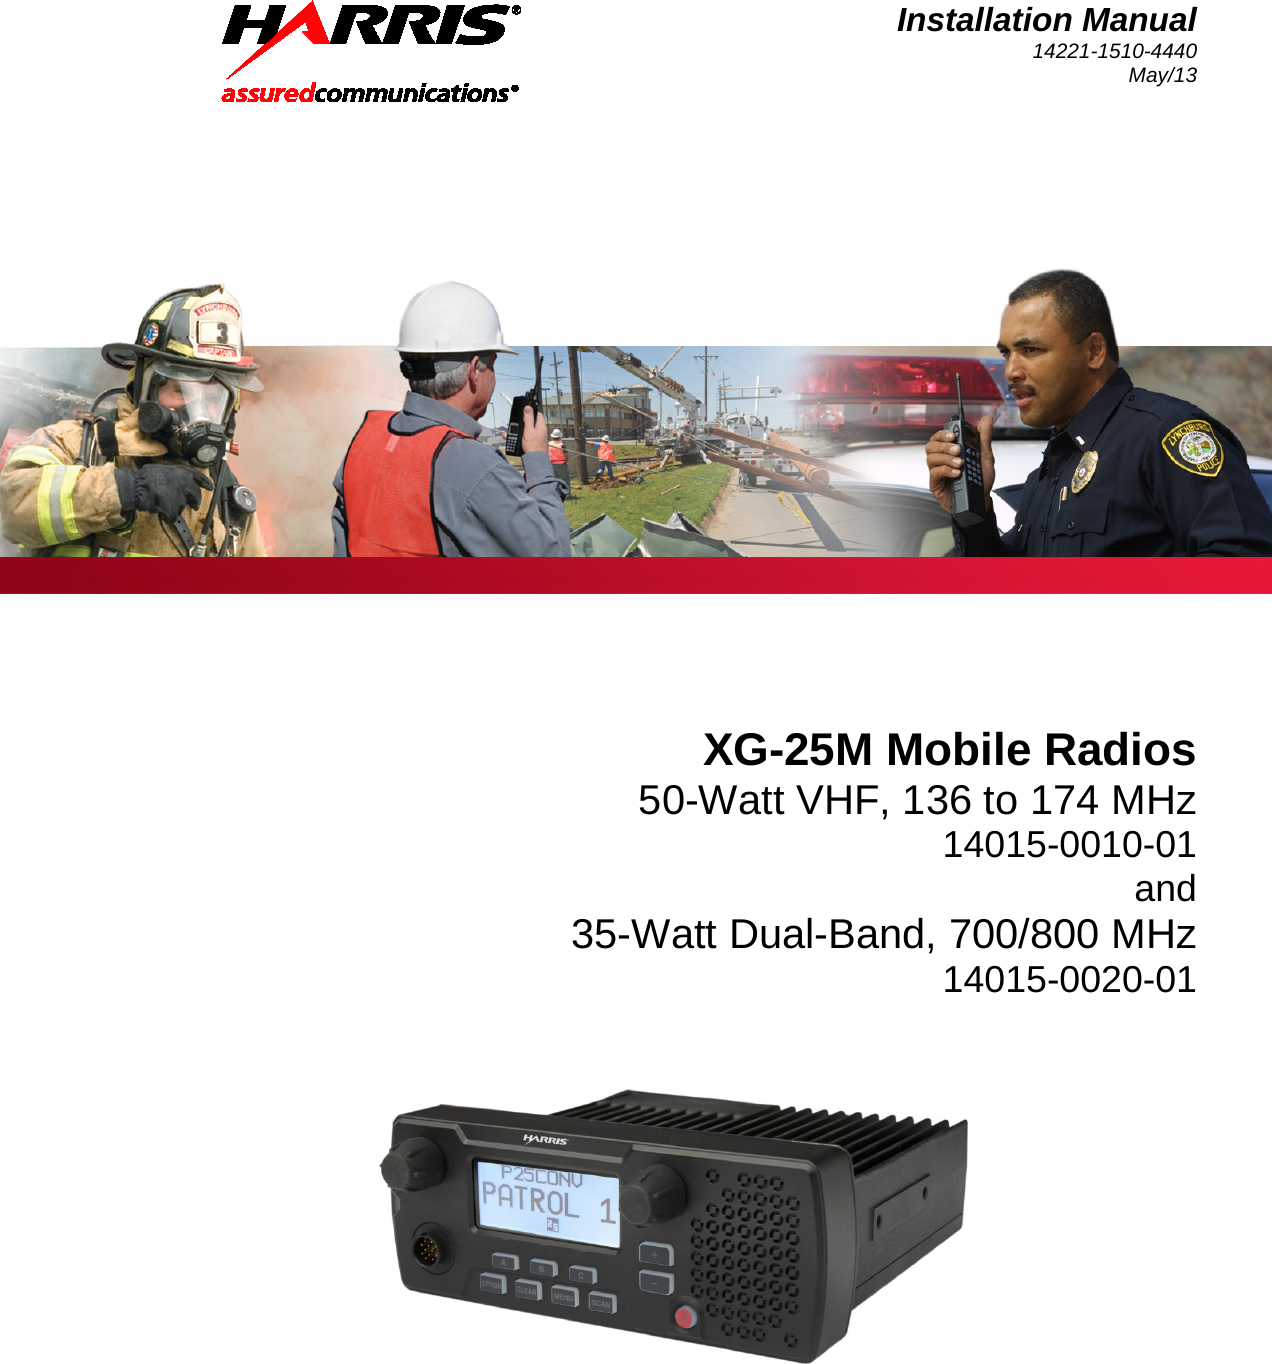 Installation Manual 14221-1510-4440 May/13   XG-25M Mobile Radios 50-Watt VHF, 136 to 174 MHz 14015-0010-01 and 35-Watt Dual-Band, 700/800 MHz 14015-0020-01  